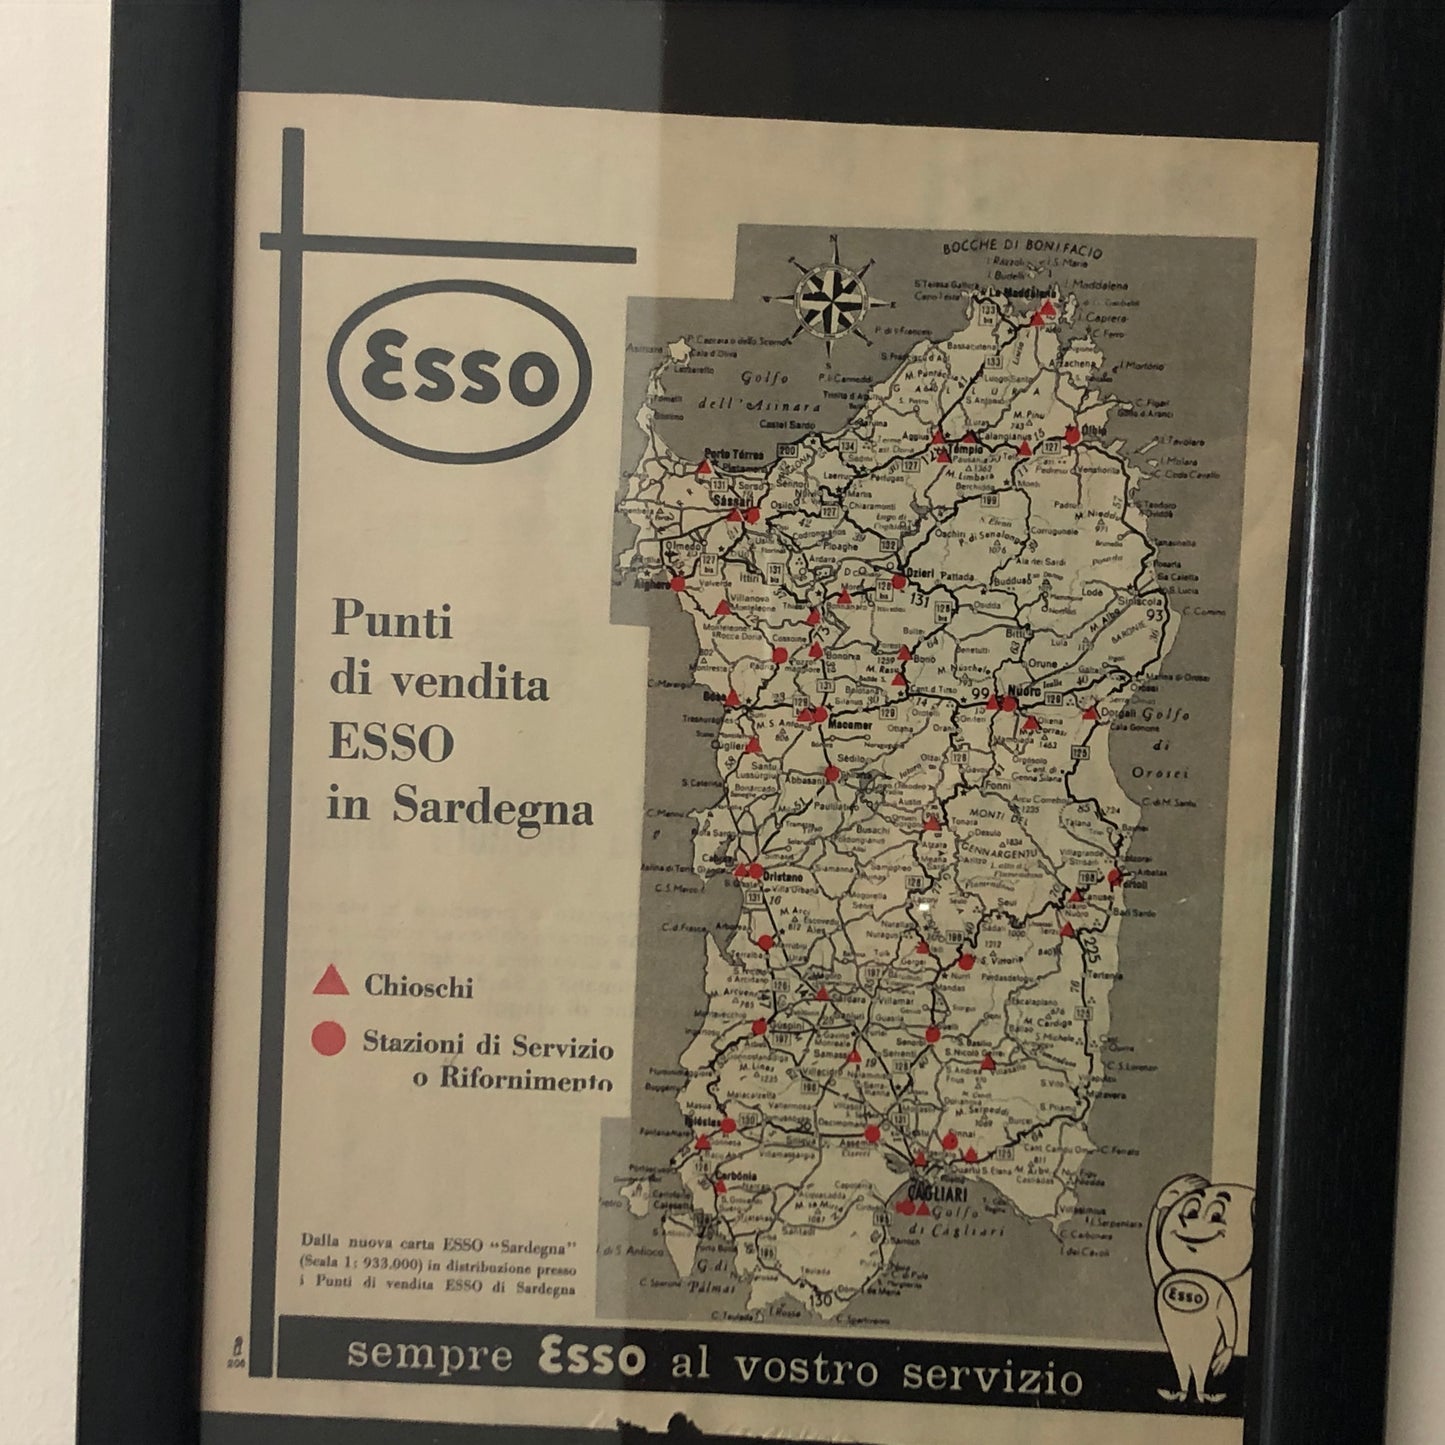 Esso, Pubblicità Anno 1960 Punti Vendita - Stazioni di Servizio Esso in Sardegna con Didascalia in Italiano